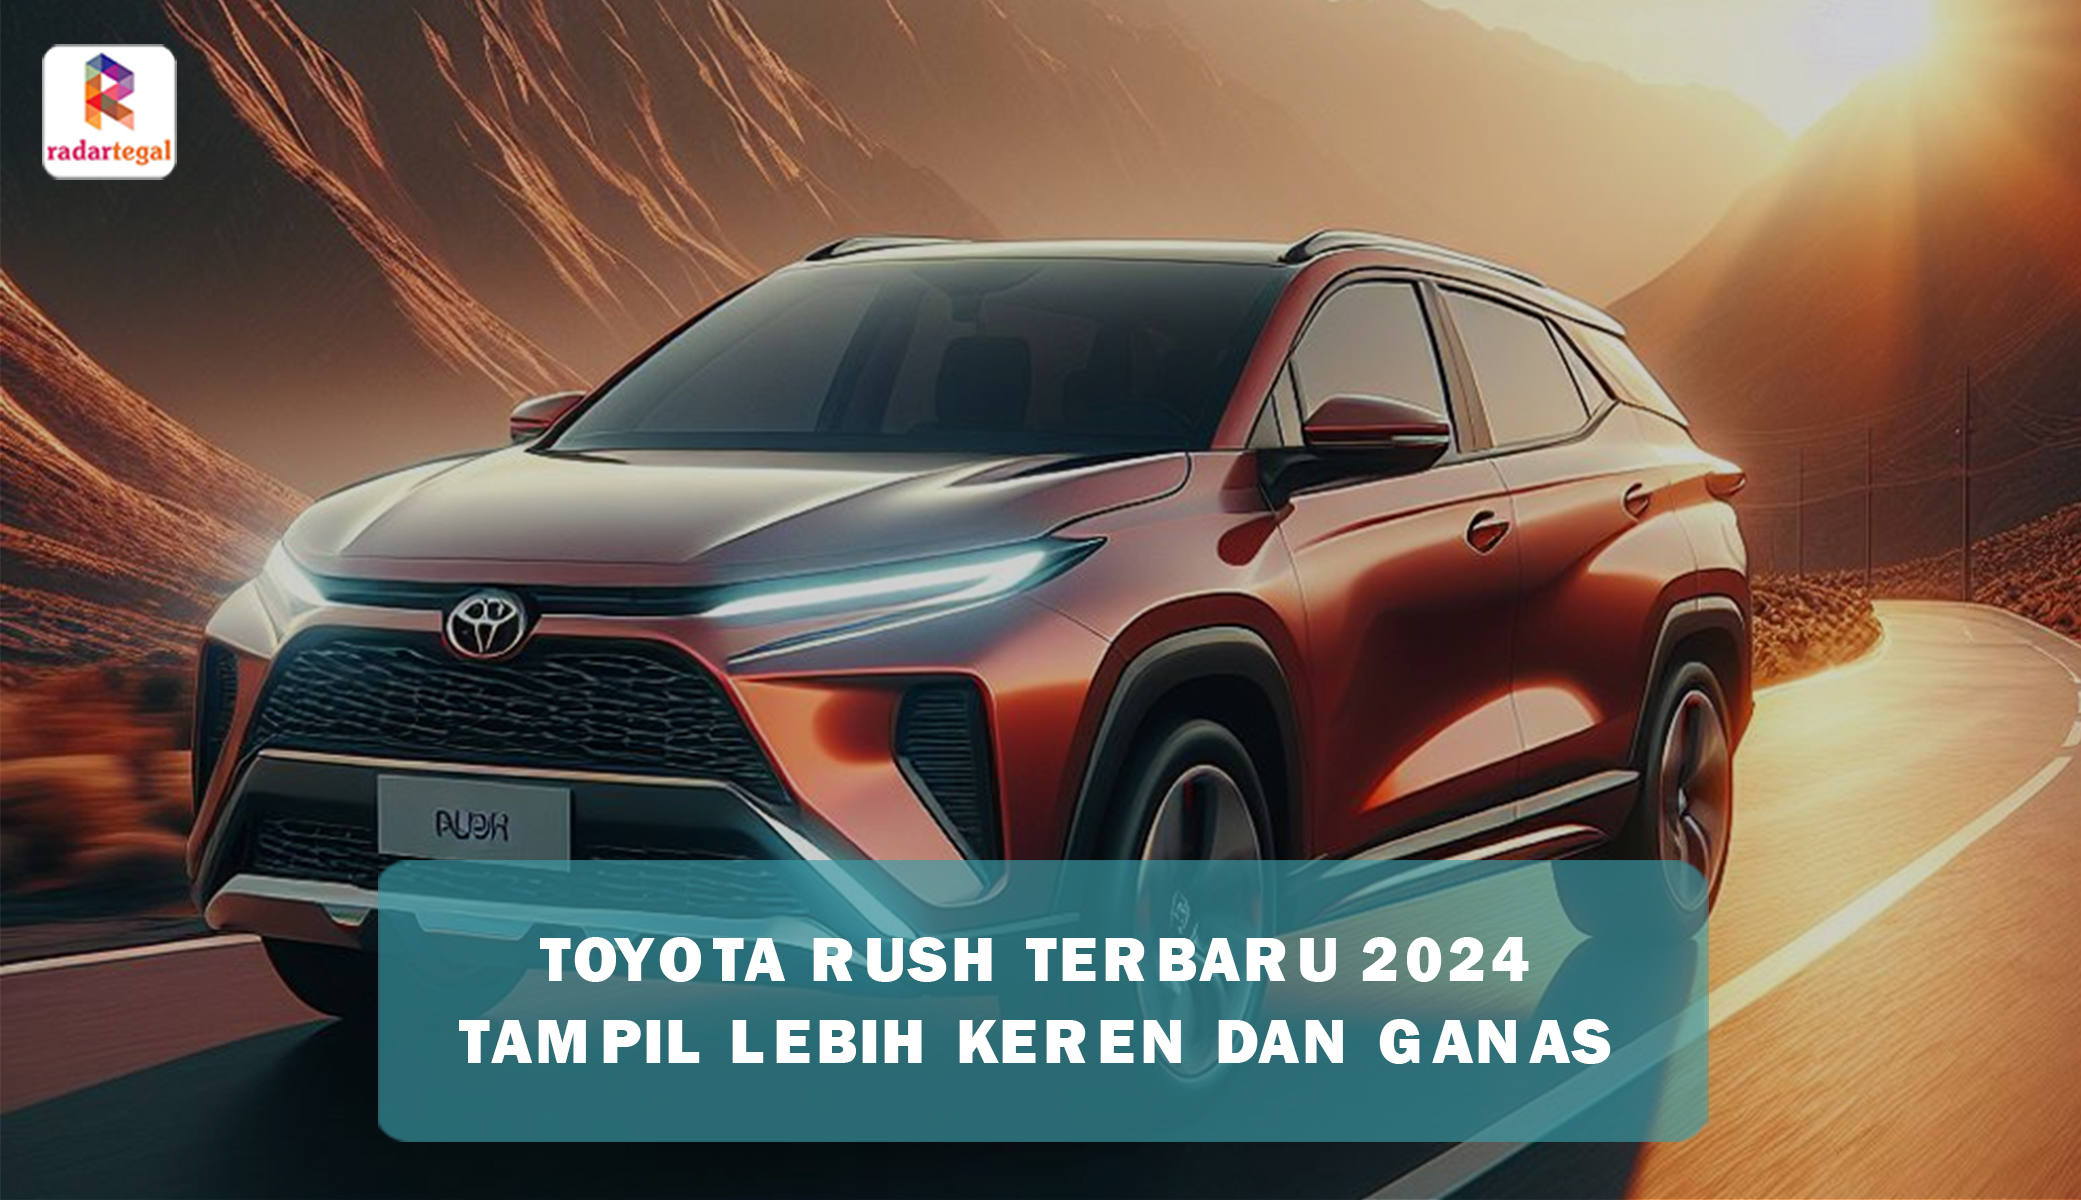 Meluncur dengan Desain Revolusioner dan Mesin Hybrid Unggulan, Toyota Rush Terbaru 2024 Bakal Gada Lawan 